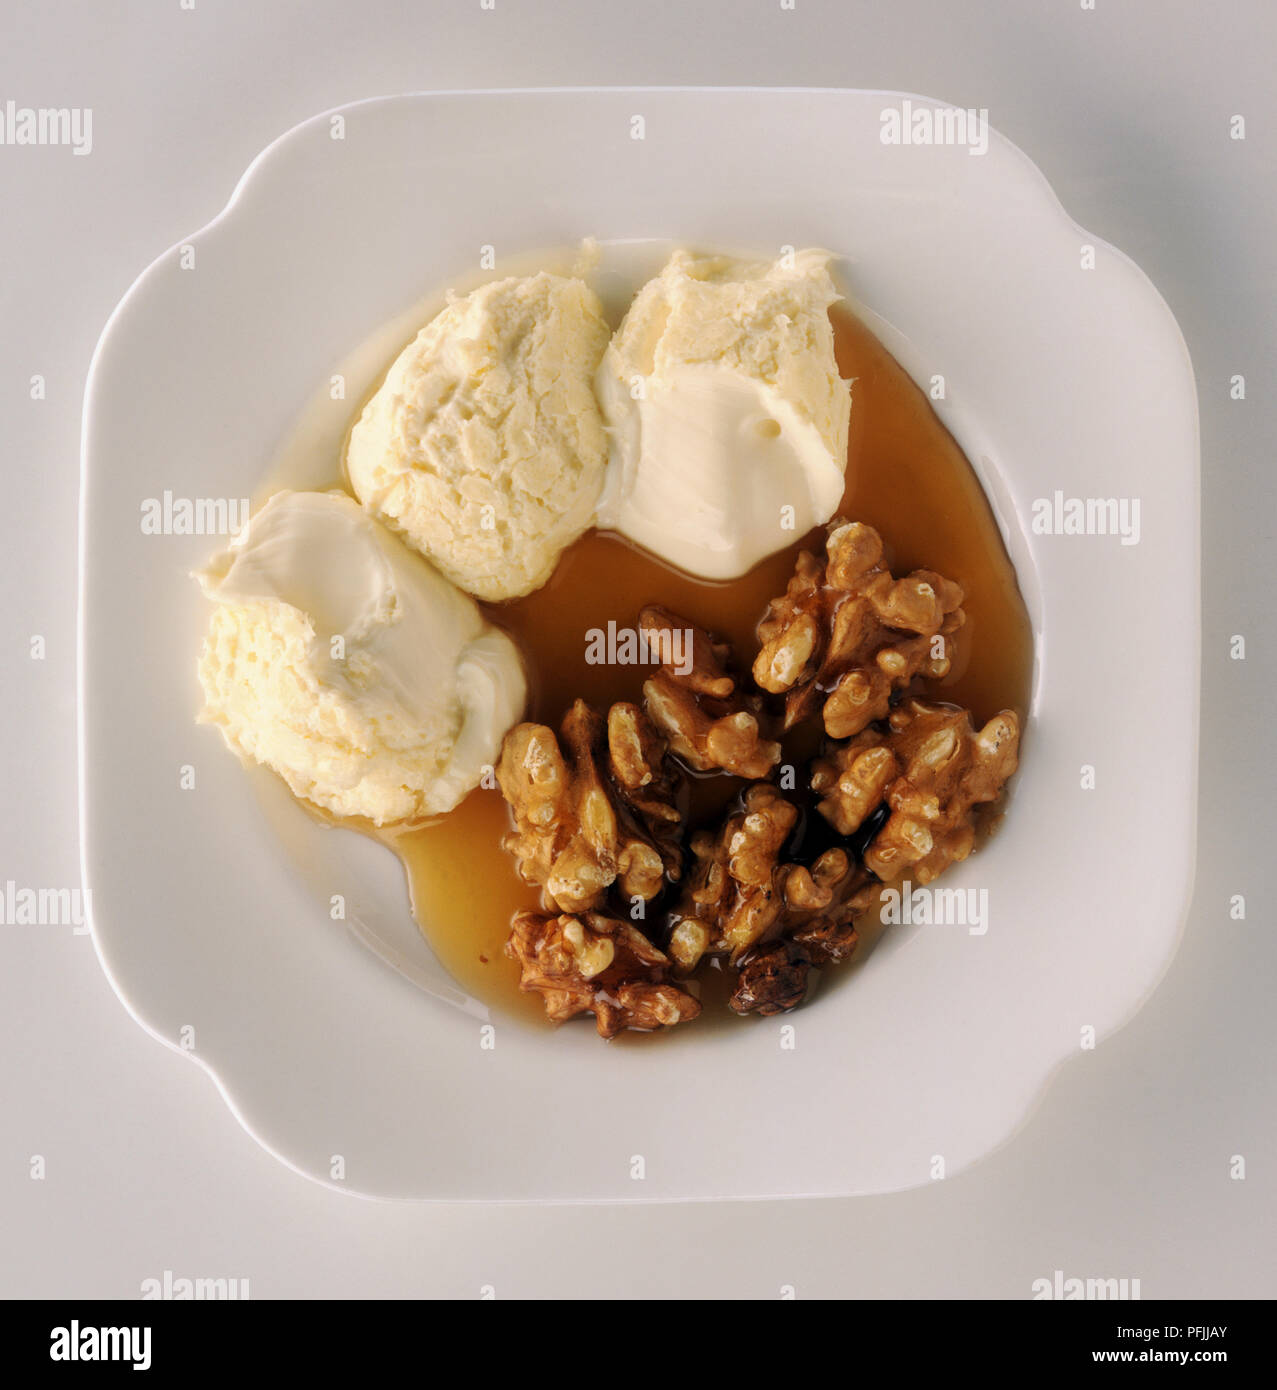 Platte von Kaimaki, ein reichhaltiges, cremiges Eis mit Walnüssen und Honig, ein typisches Dessert aus Griechenland, Ansicht von oben Stockfoto